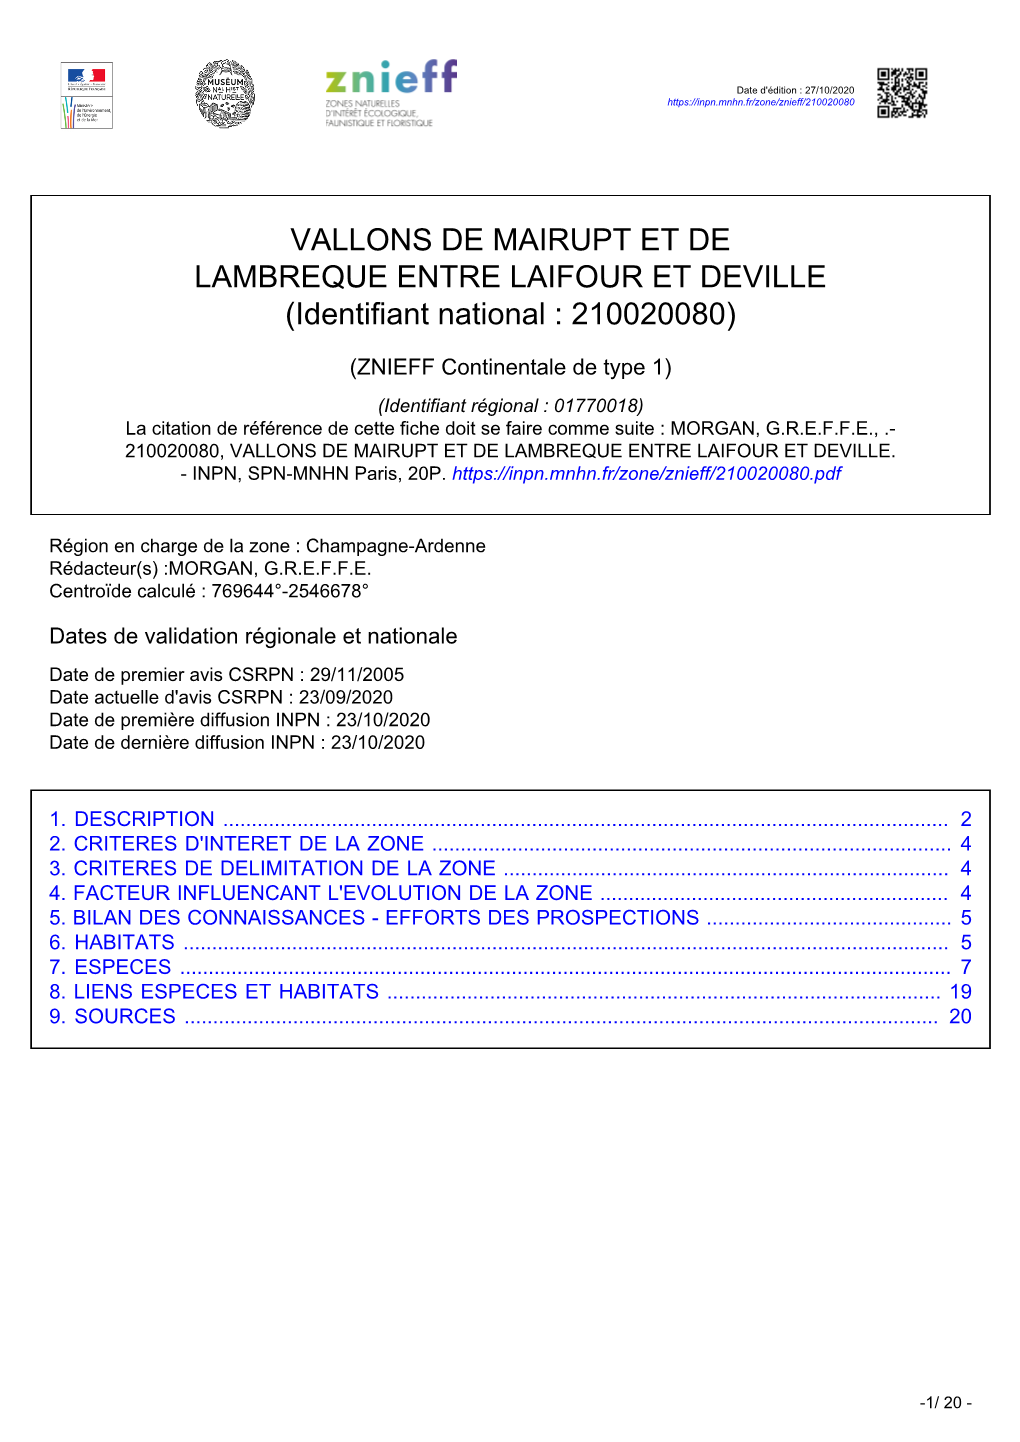 VALLONS DE MAIRUPT ET DE LAMBREQUE ENTRE LAIFOUR ET DEVILLE (Identifiant National : 210020080)